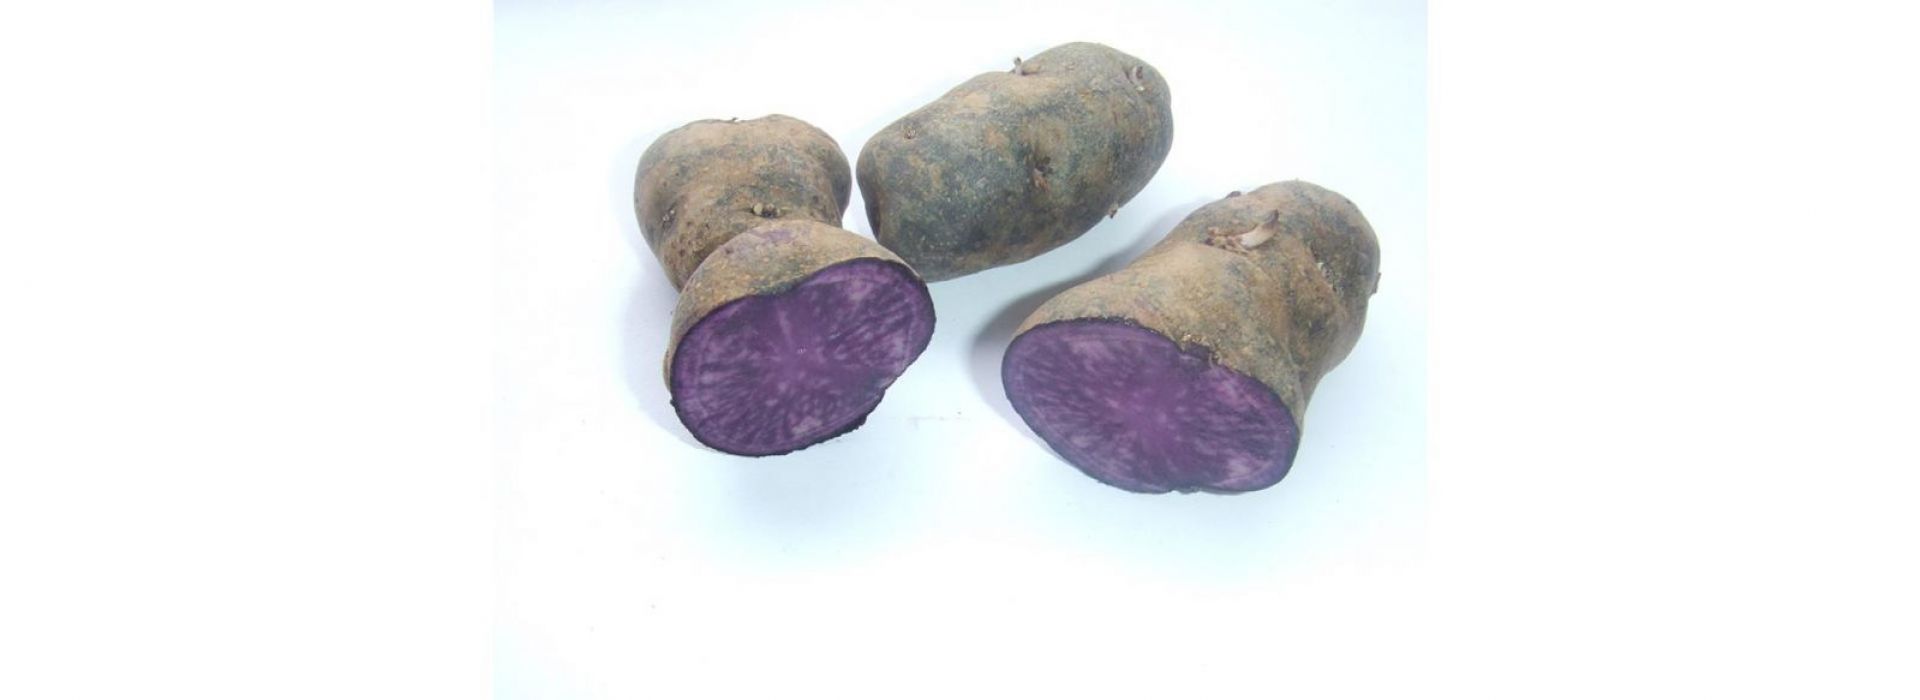 Potatoes Truffe de Chine